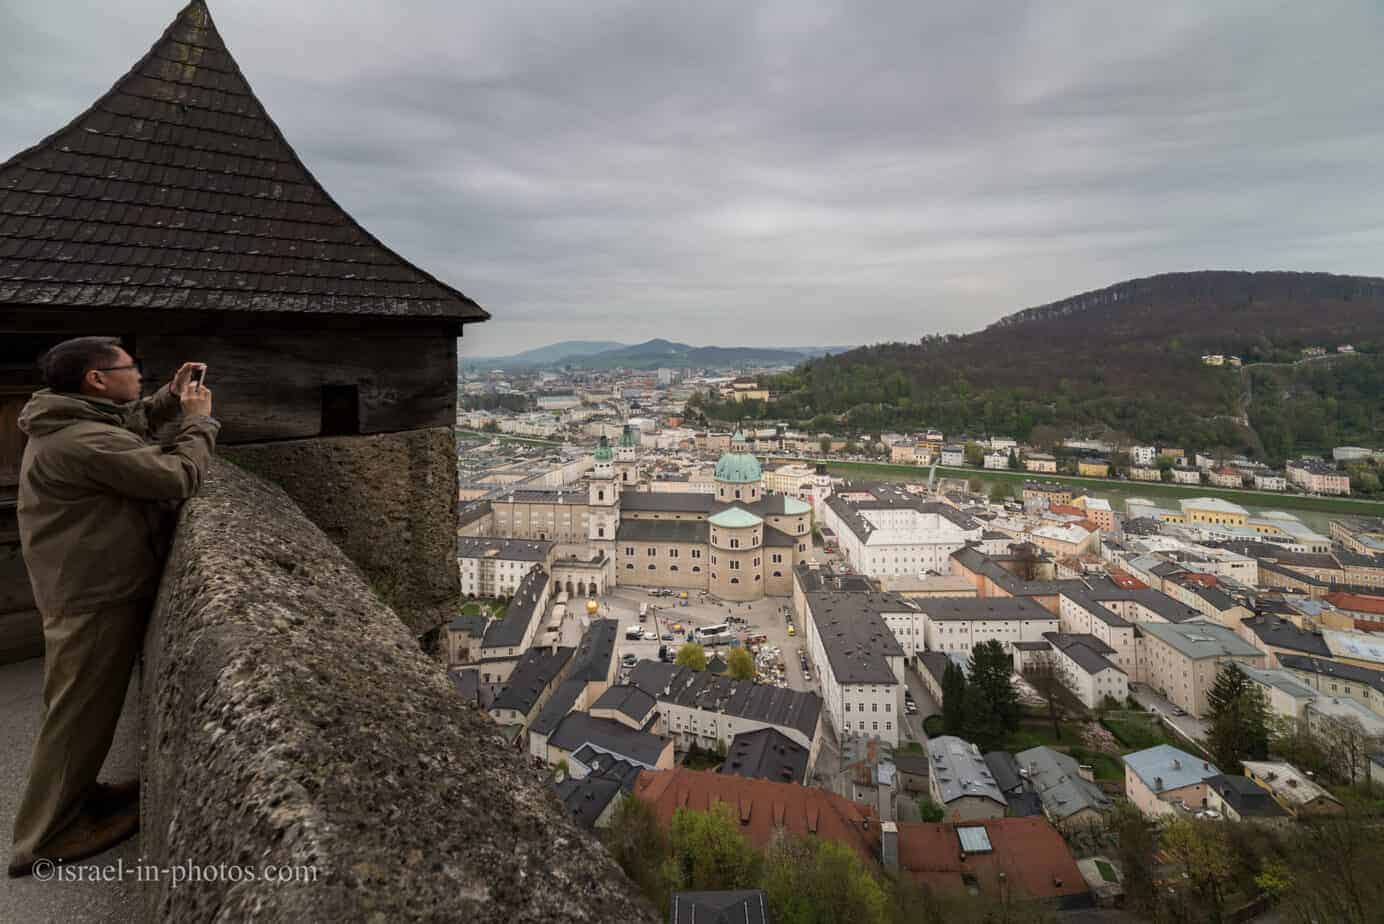 В крепости Хоэнзальцбург в Зальцбурге, Австрия